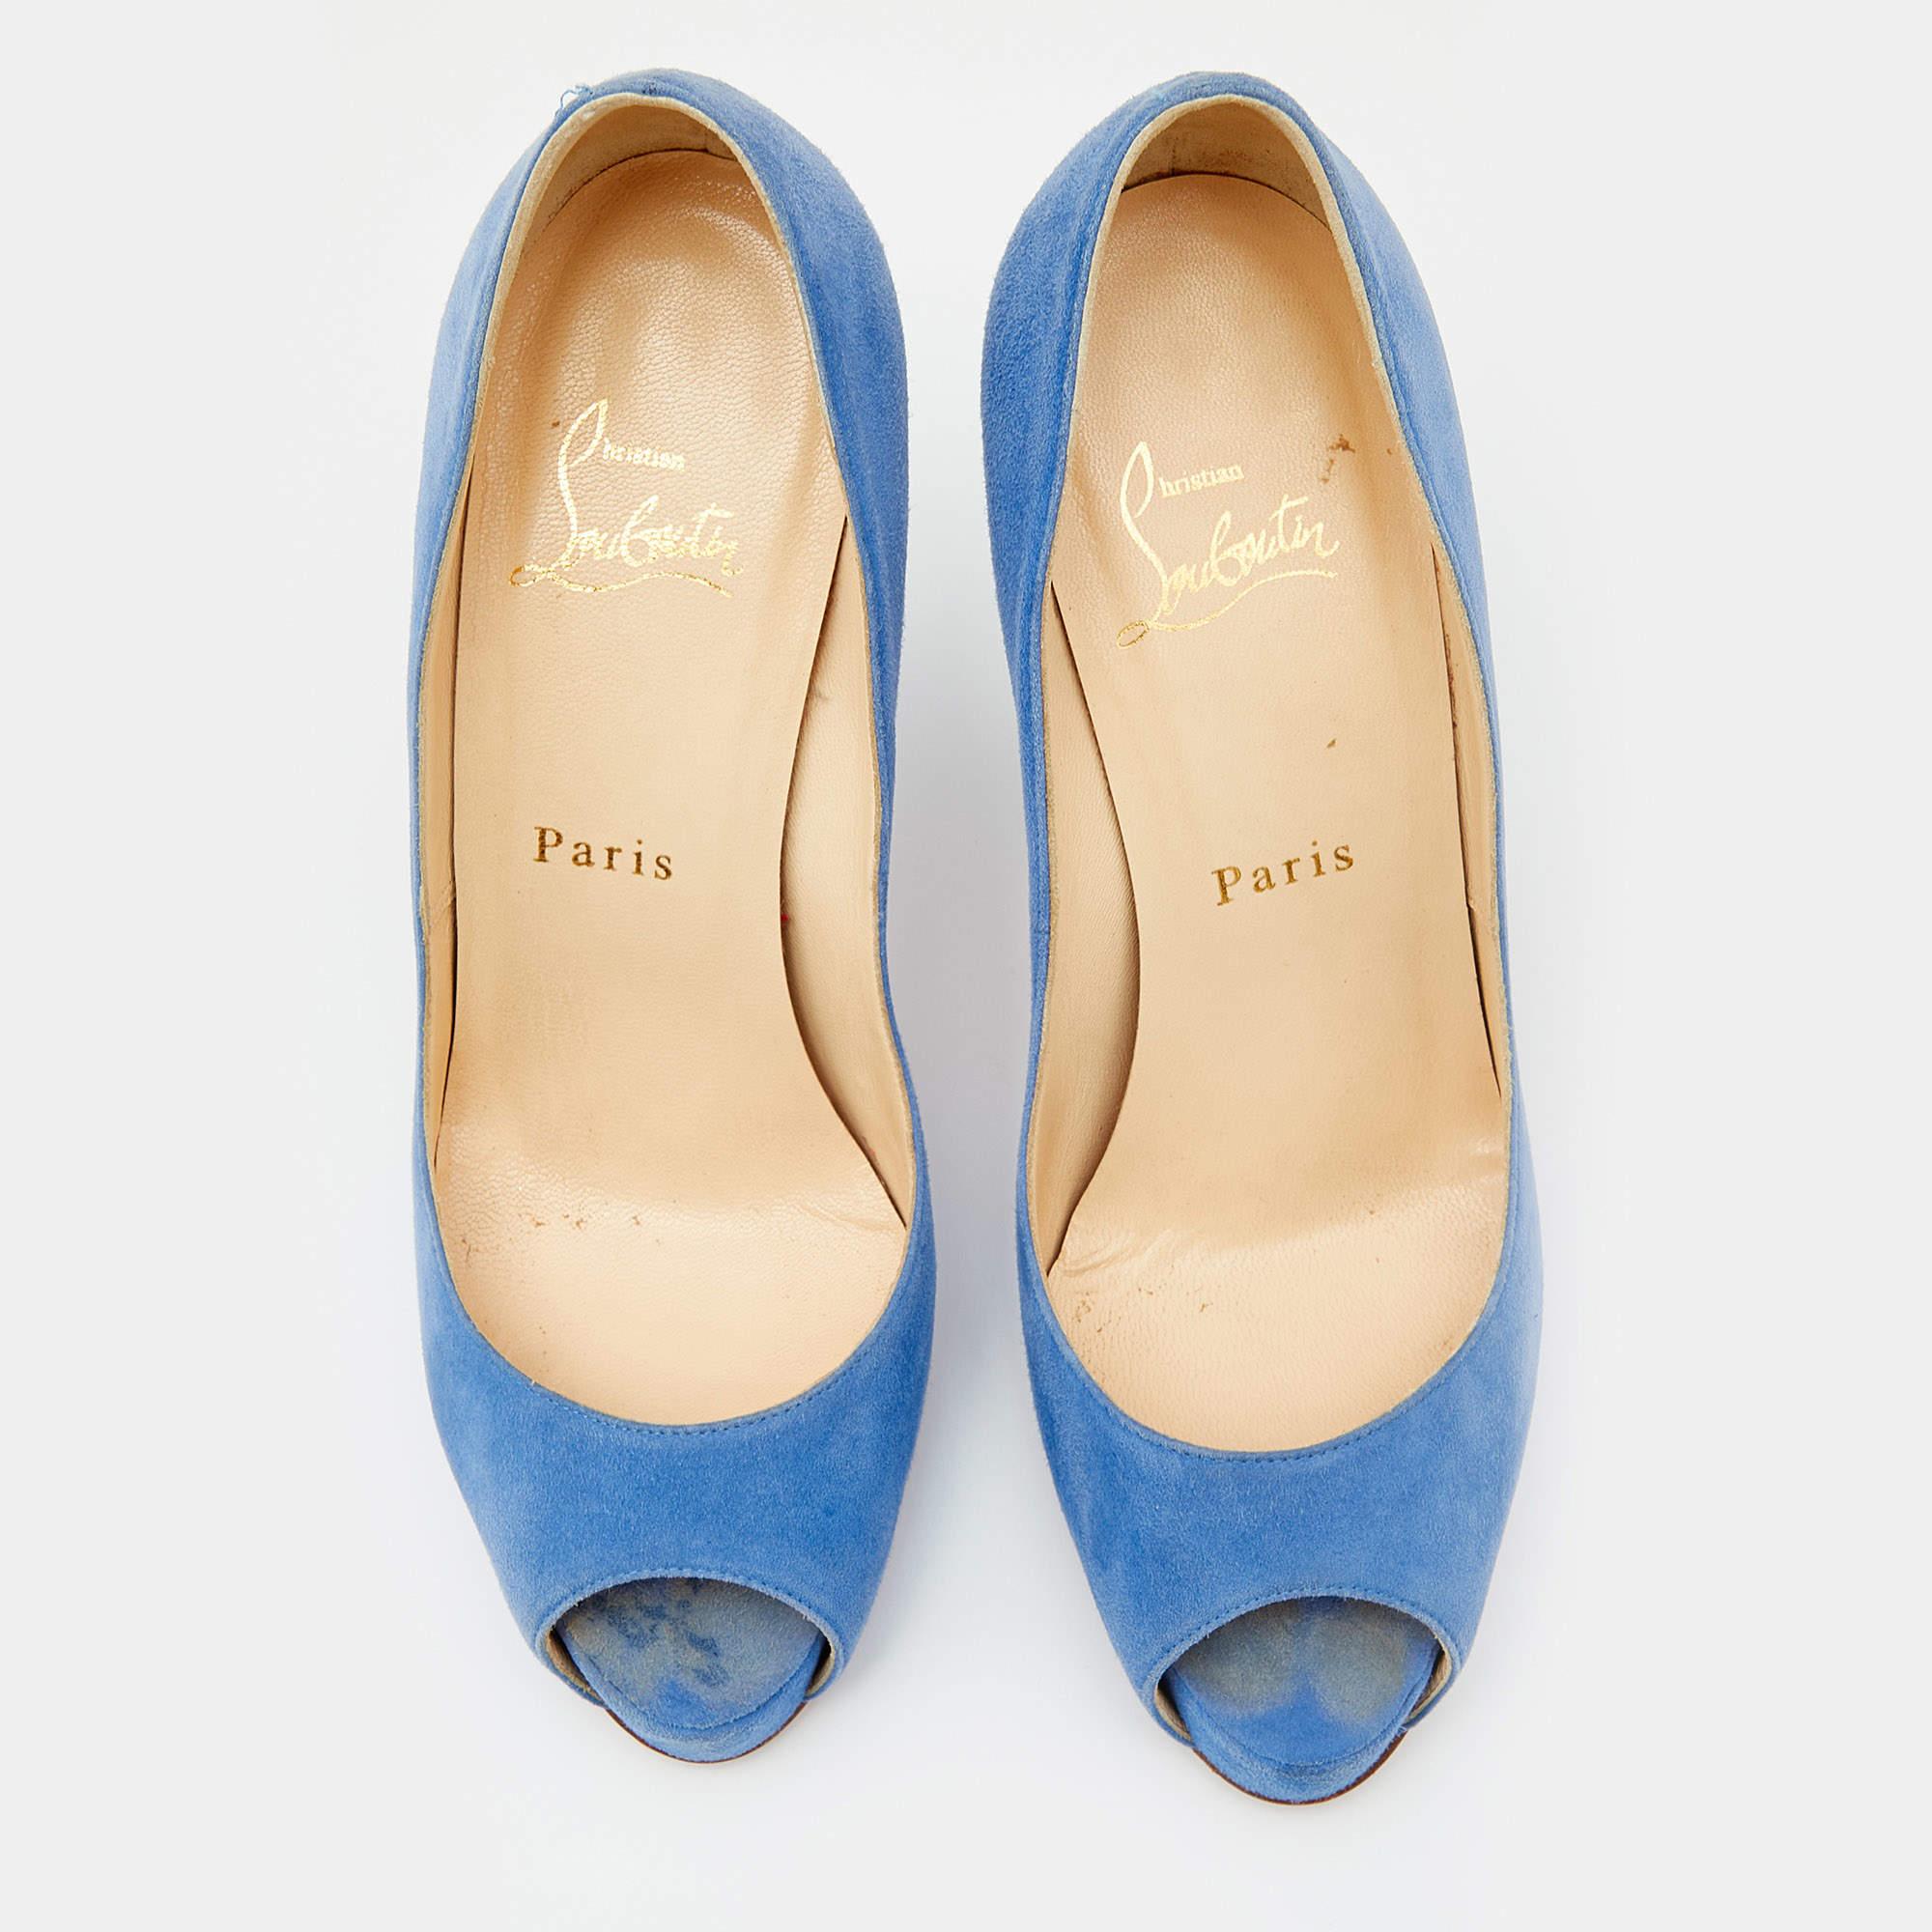 Cette paire d'escarpins Christian Louboutin est un classique intemporel. Sortez avec style en arborant ces escarpins en daim bleu, idéaux pour les sorties estivales. Ils sont dotés de peep toes, de plates-formes et de talons de 11.5 cm.

